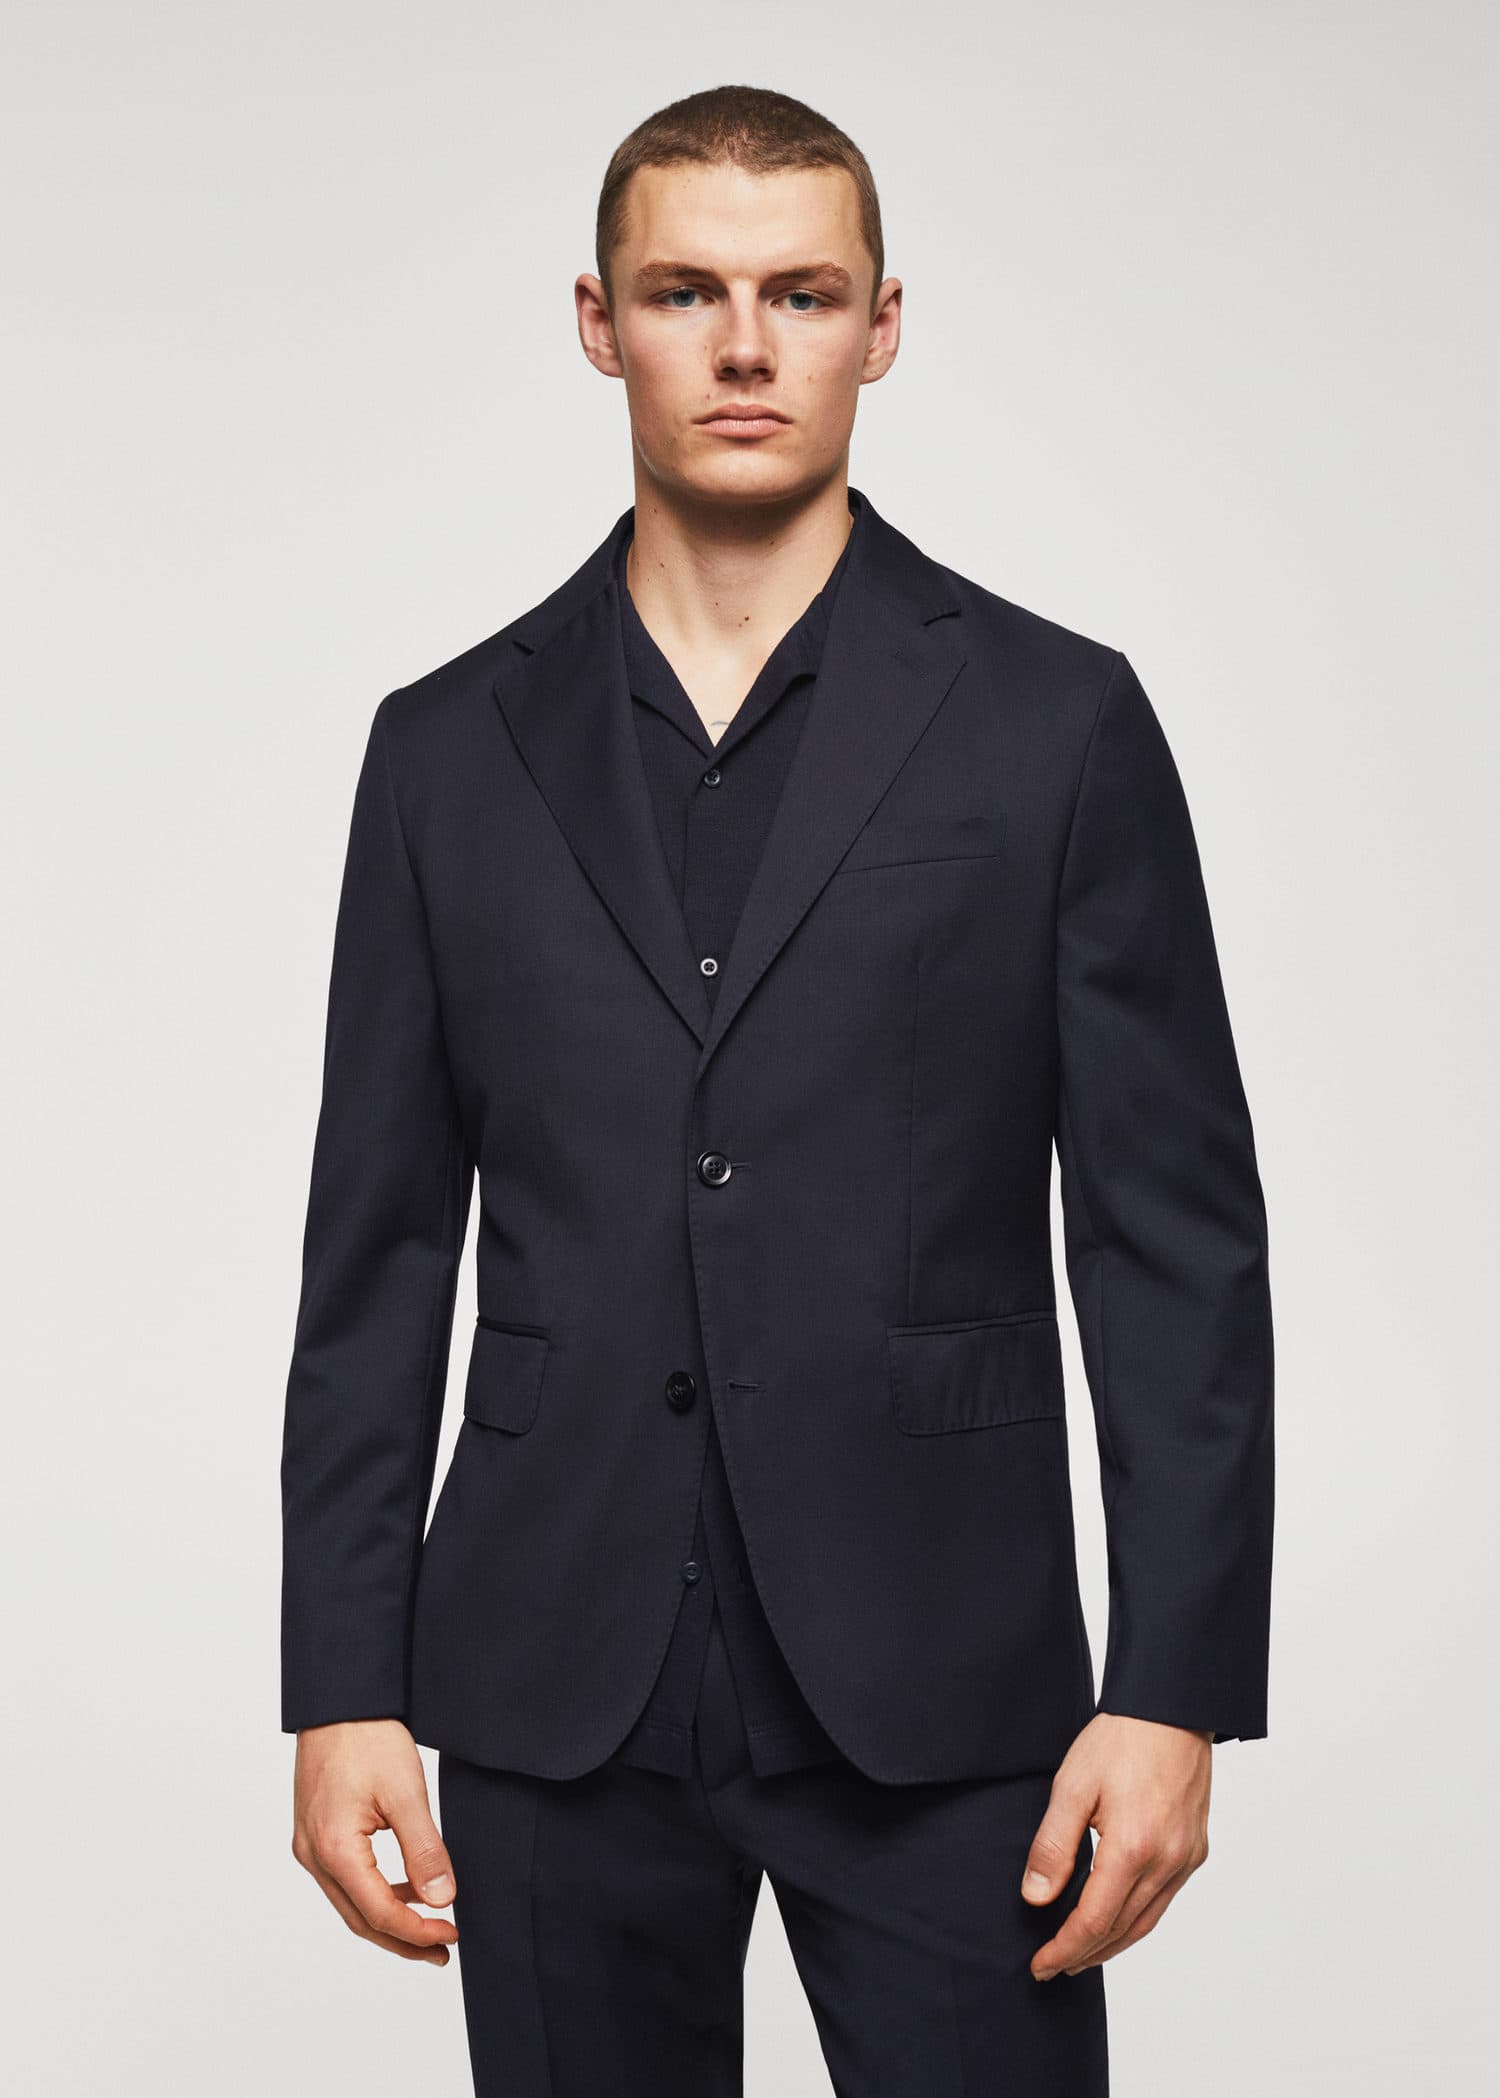 Slim fit virgin wool suit blazer - Medium plane